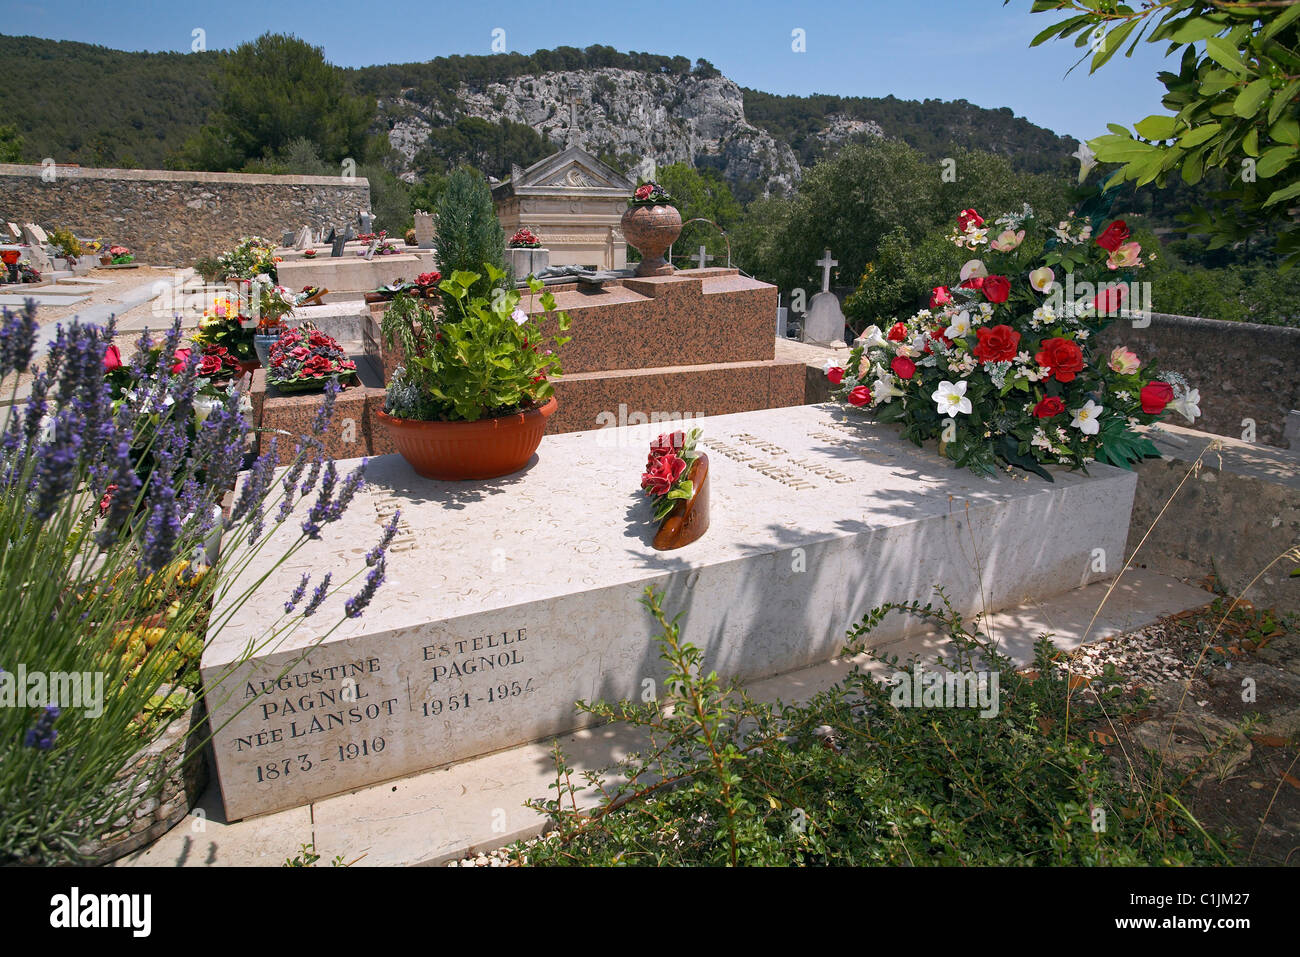 France, Bouches du Rhone, Provence, célèbre écrivain Marcel Pagnol, à la tombe de la Treille près de Aubagne Banque D'Images